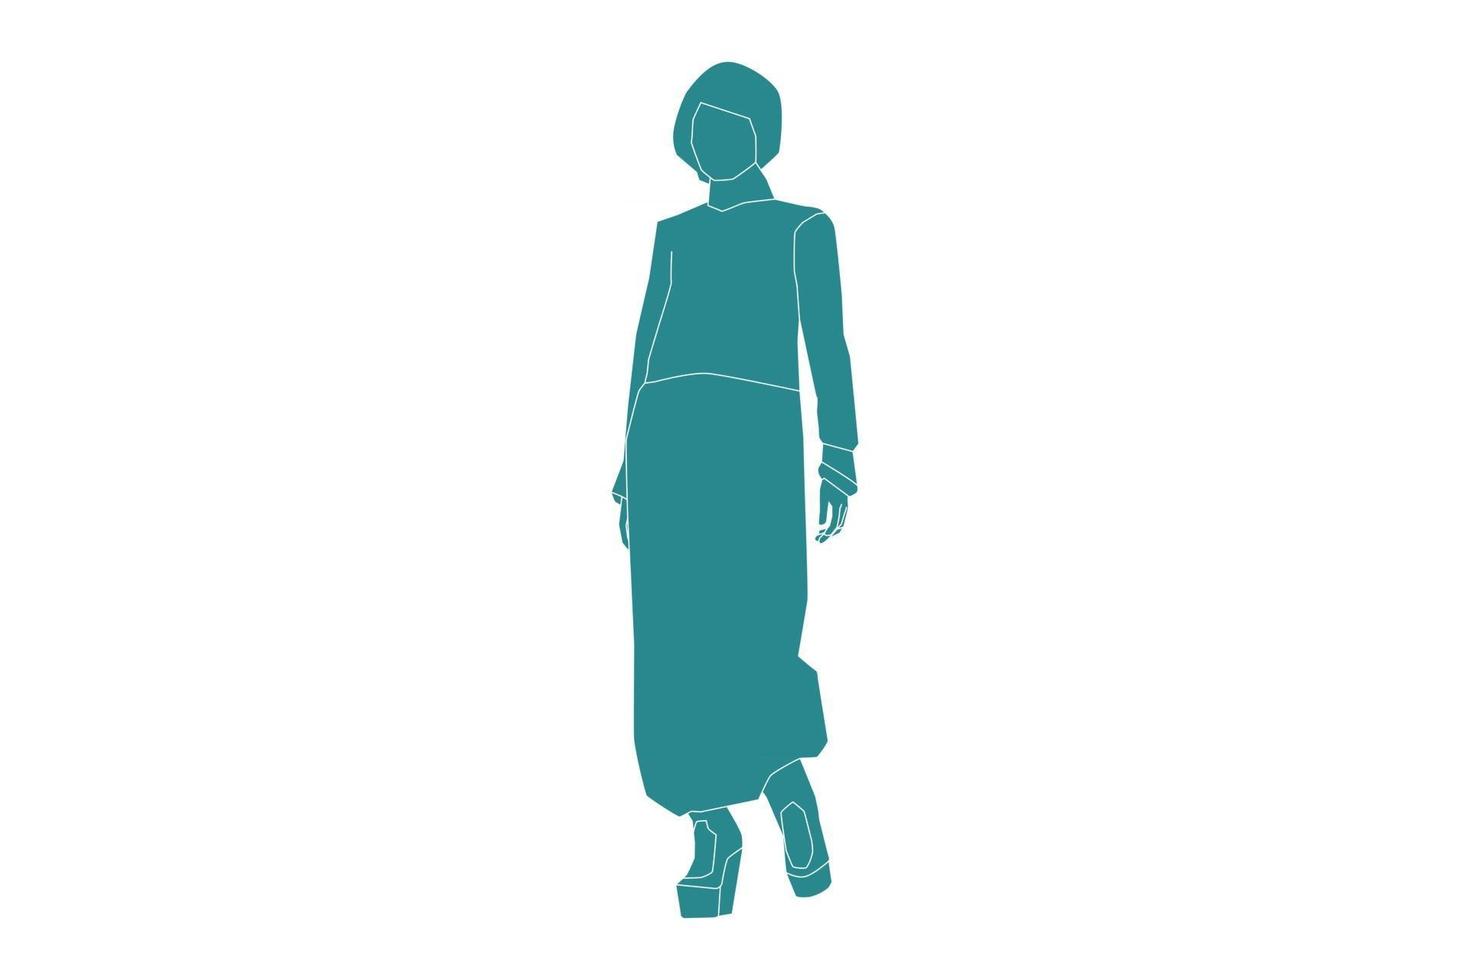 Vektor-Illustration der muslimischen Frau zu Fuß, flacher Stil mit Umriss vektor